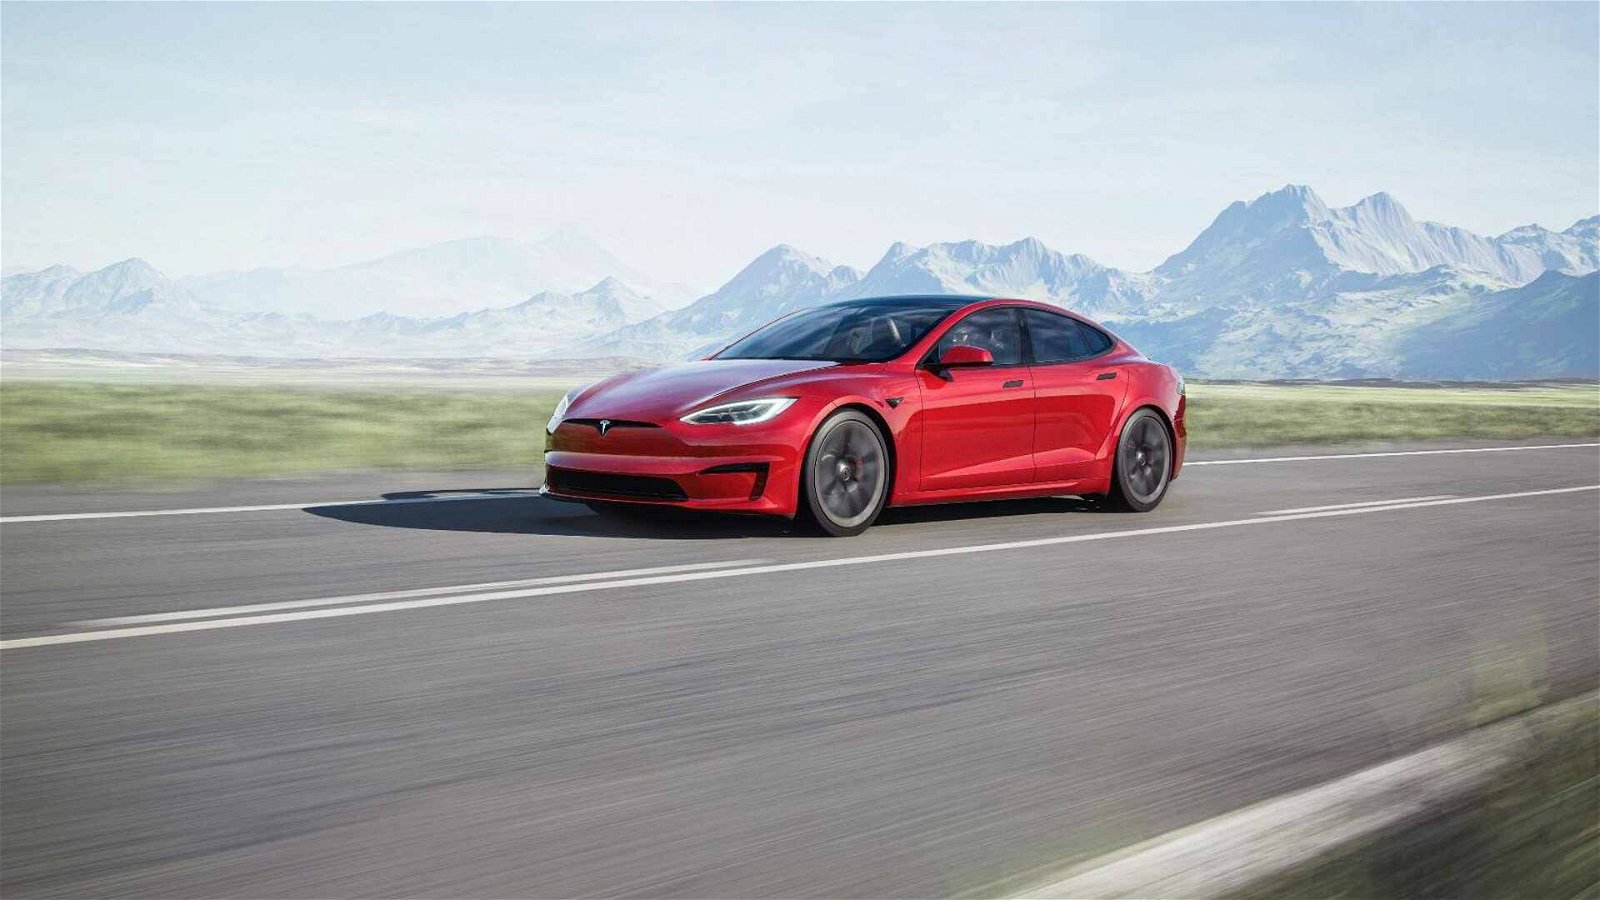 Immagine di Tesla Model S Plaid, raggiunto nuovo record sui 400 metri?